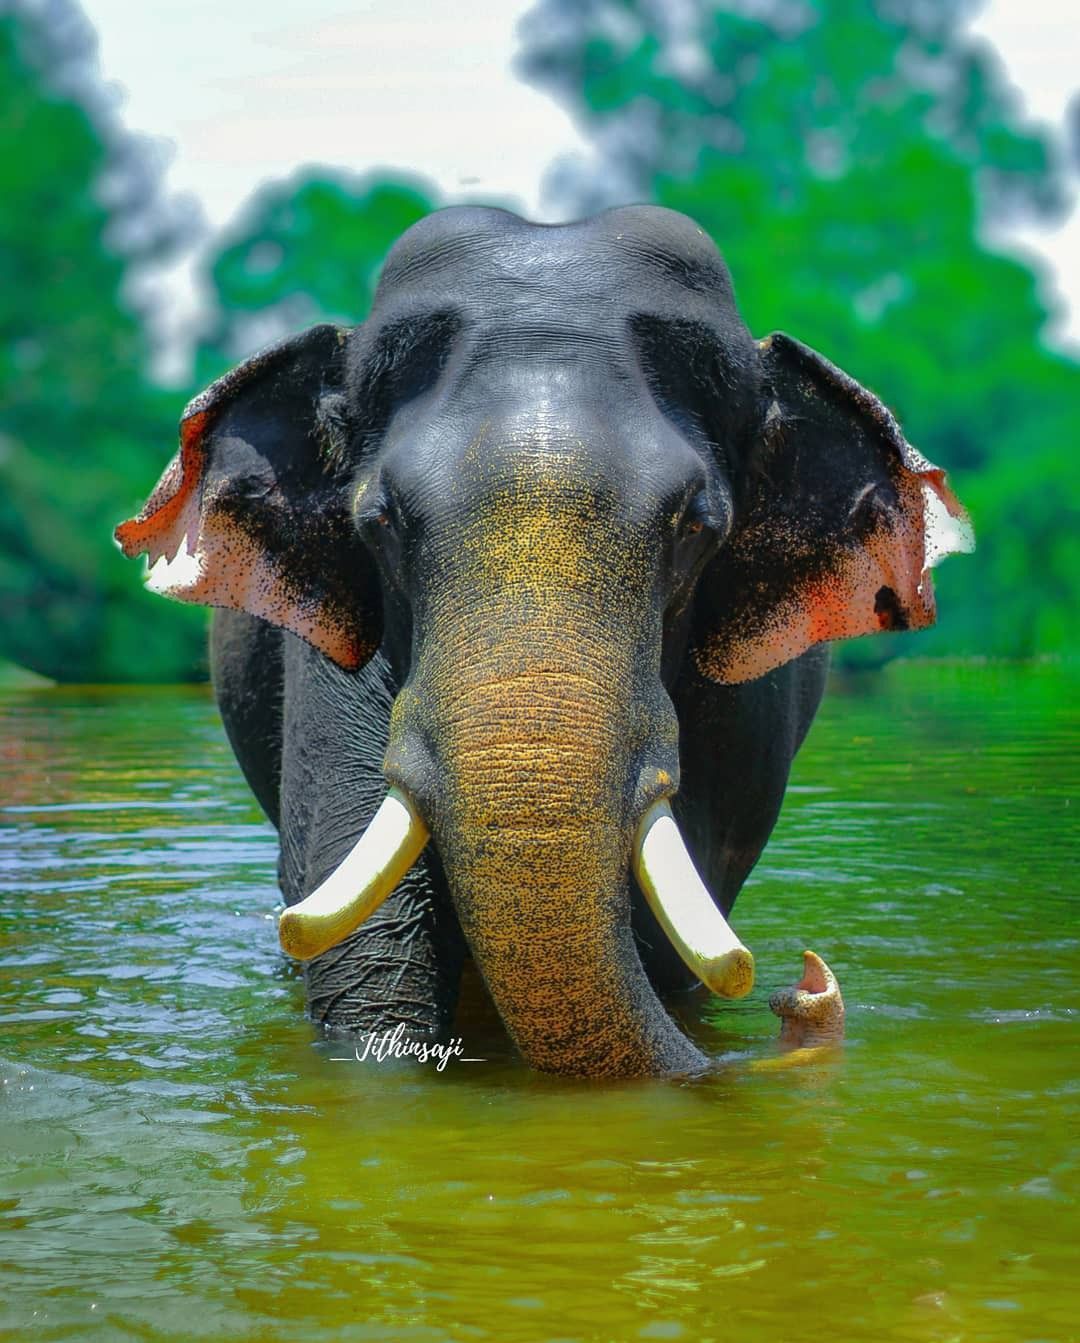 Best Indian Elephants image. Indian elephant